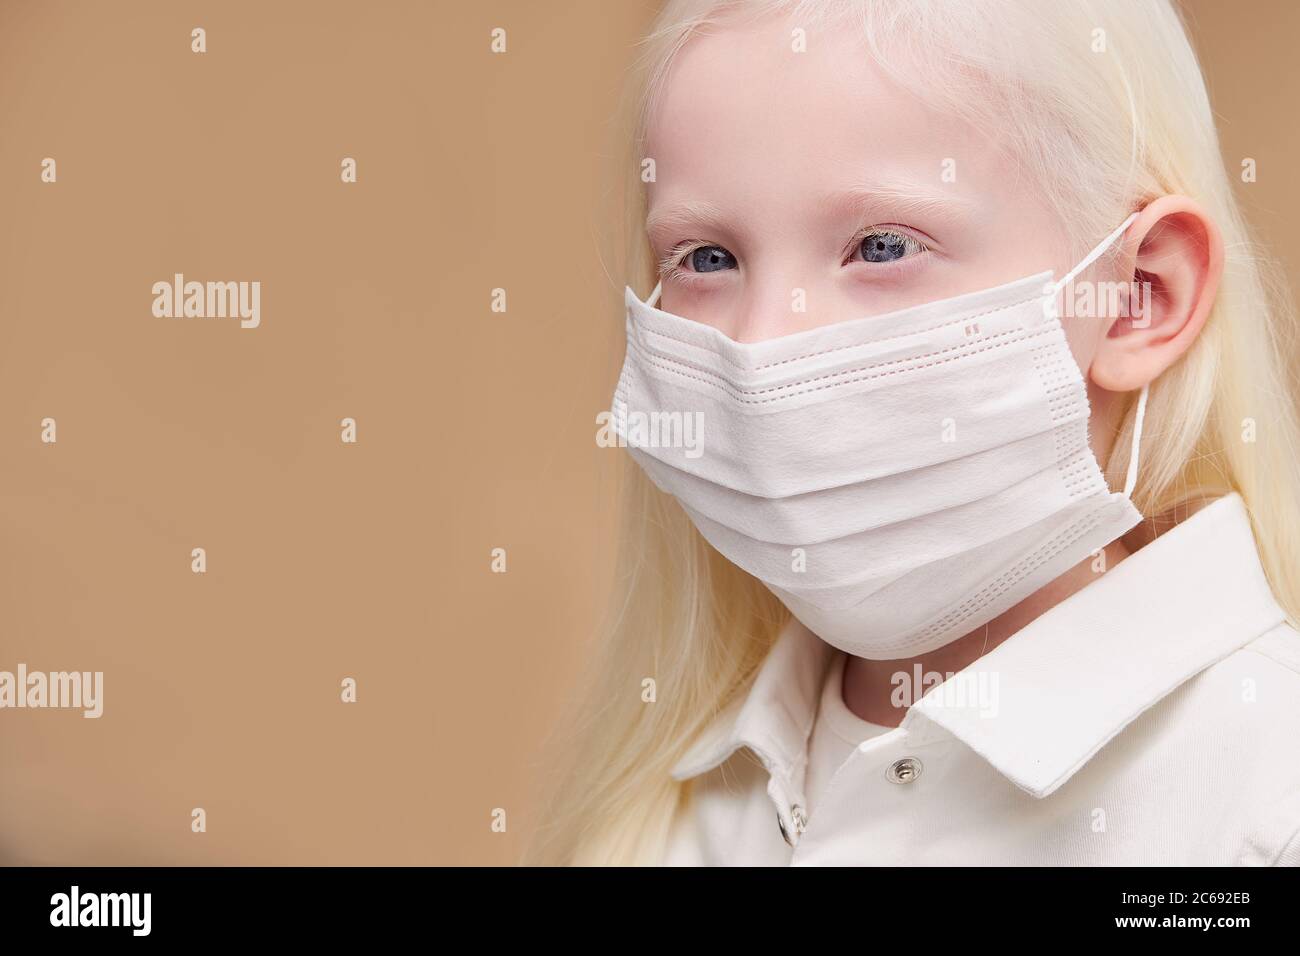 ritratto di bambino albino mistico malato in maschera medica isolata,  splendida ragazza con capelli assolutamente bianchi, ciglia, sopracciglia e  occhi blu stanno guardando Foto stock - Alamy